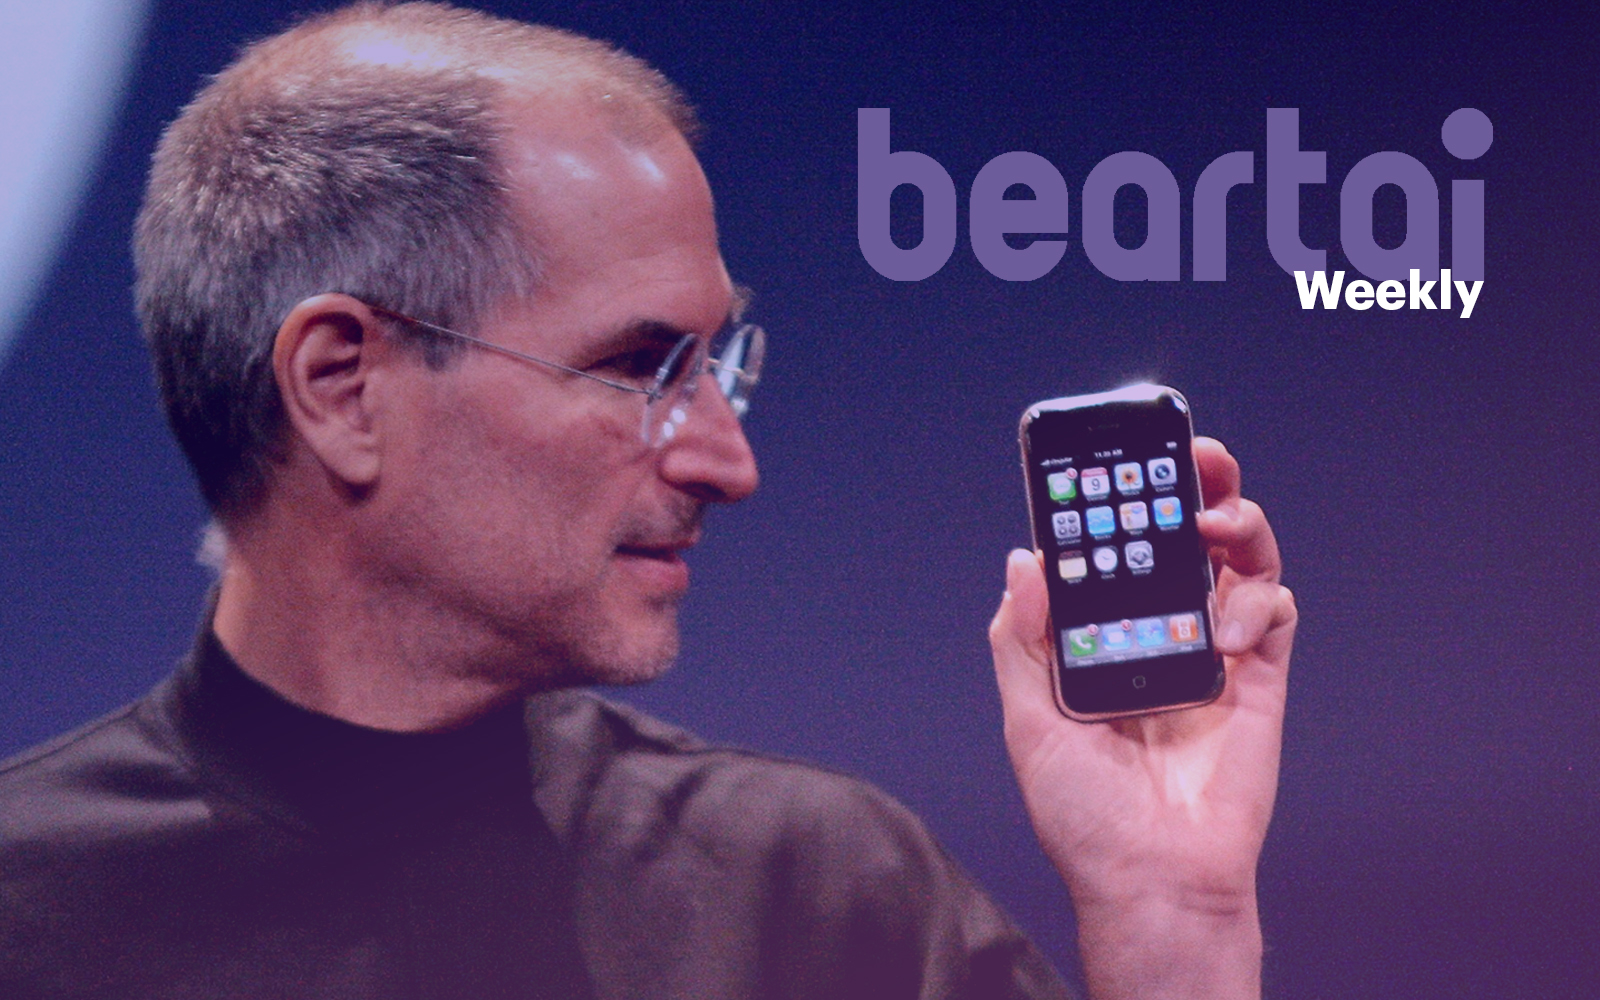 15 ปีของ iPhone กับการปฏิวัติวงการสมาร์ตโฟน |  beartai Weekly